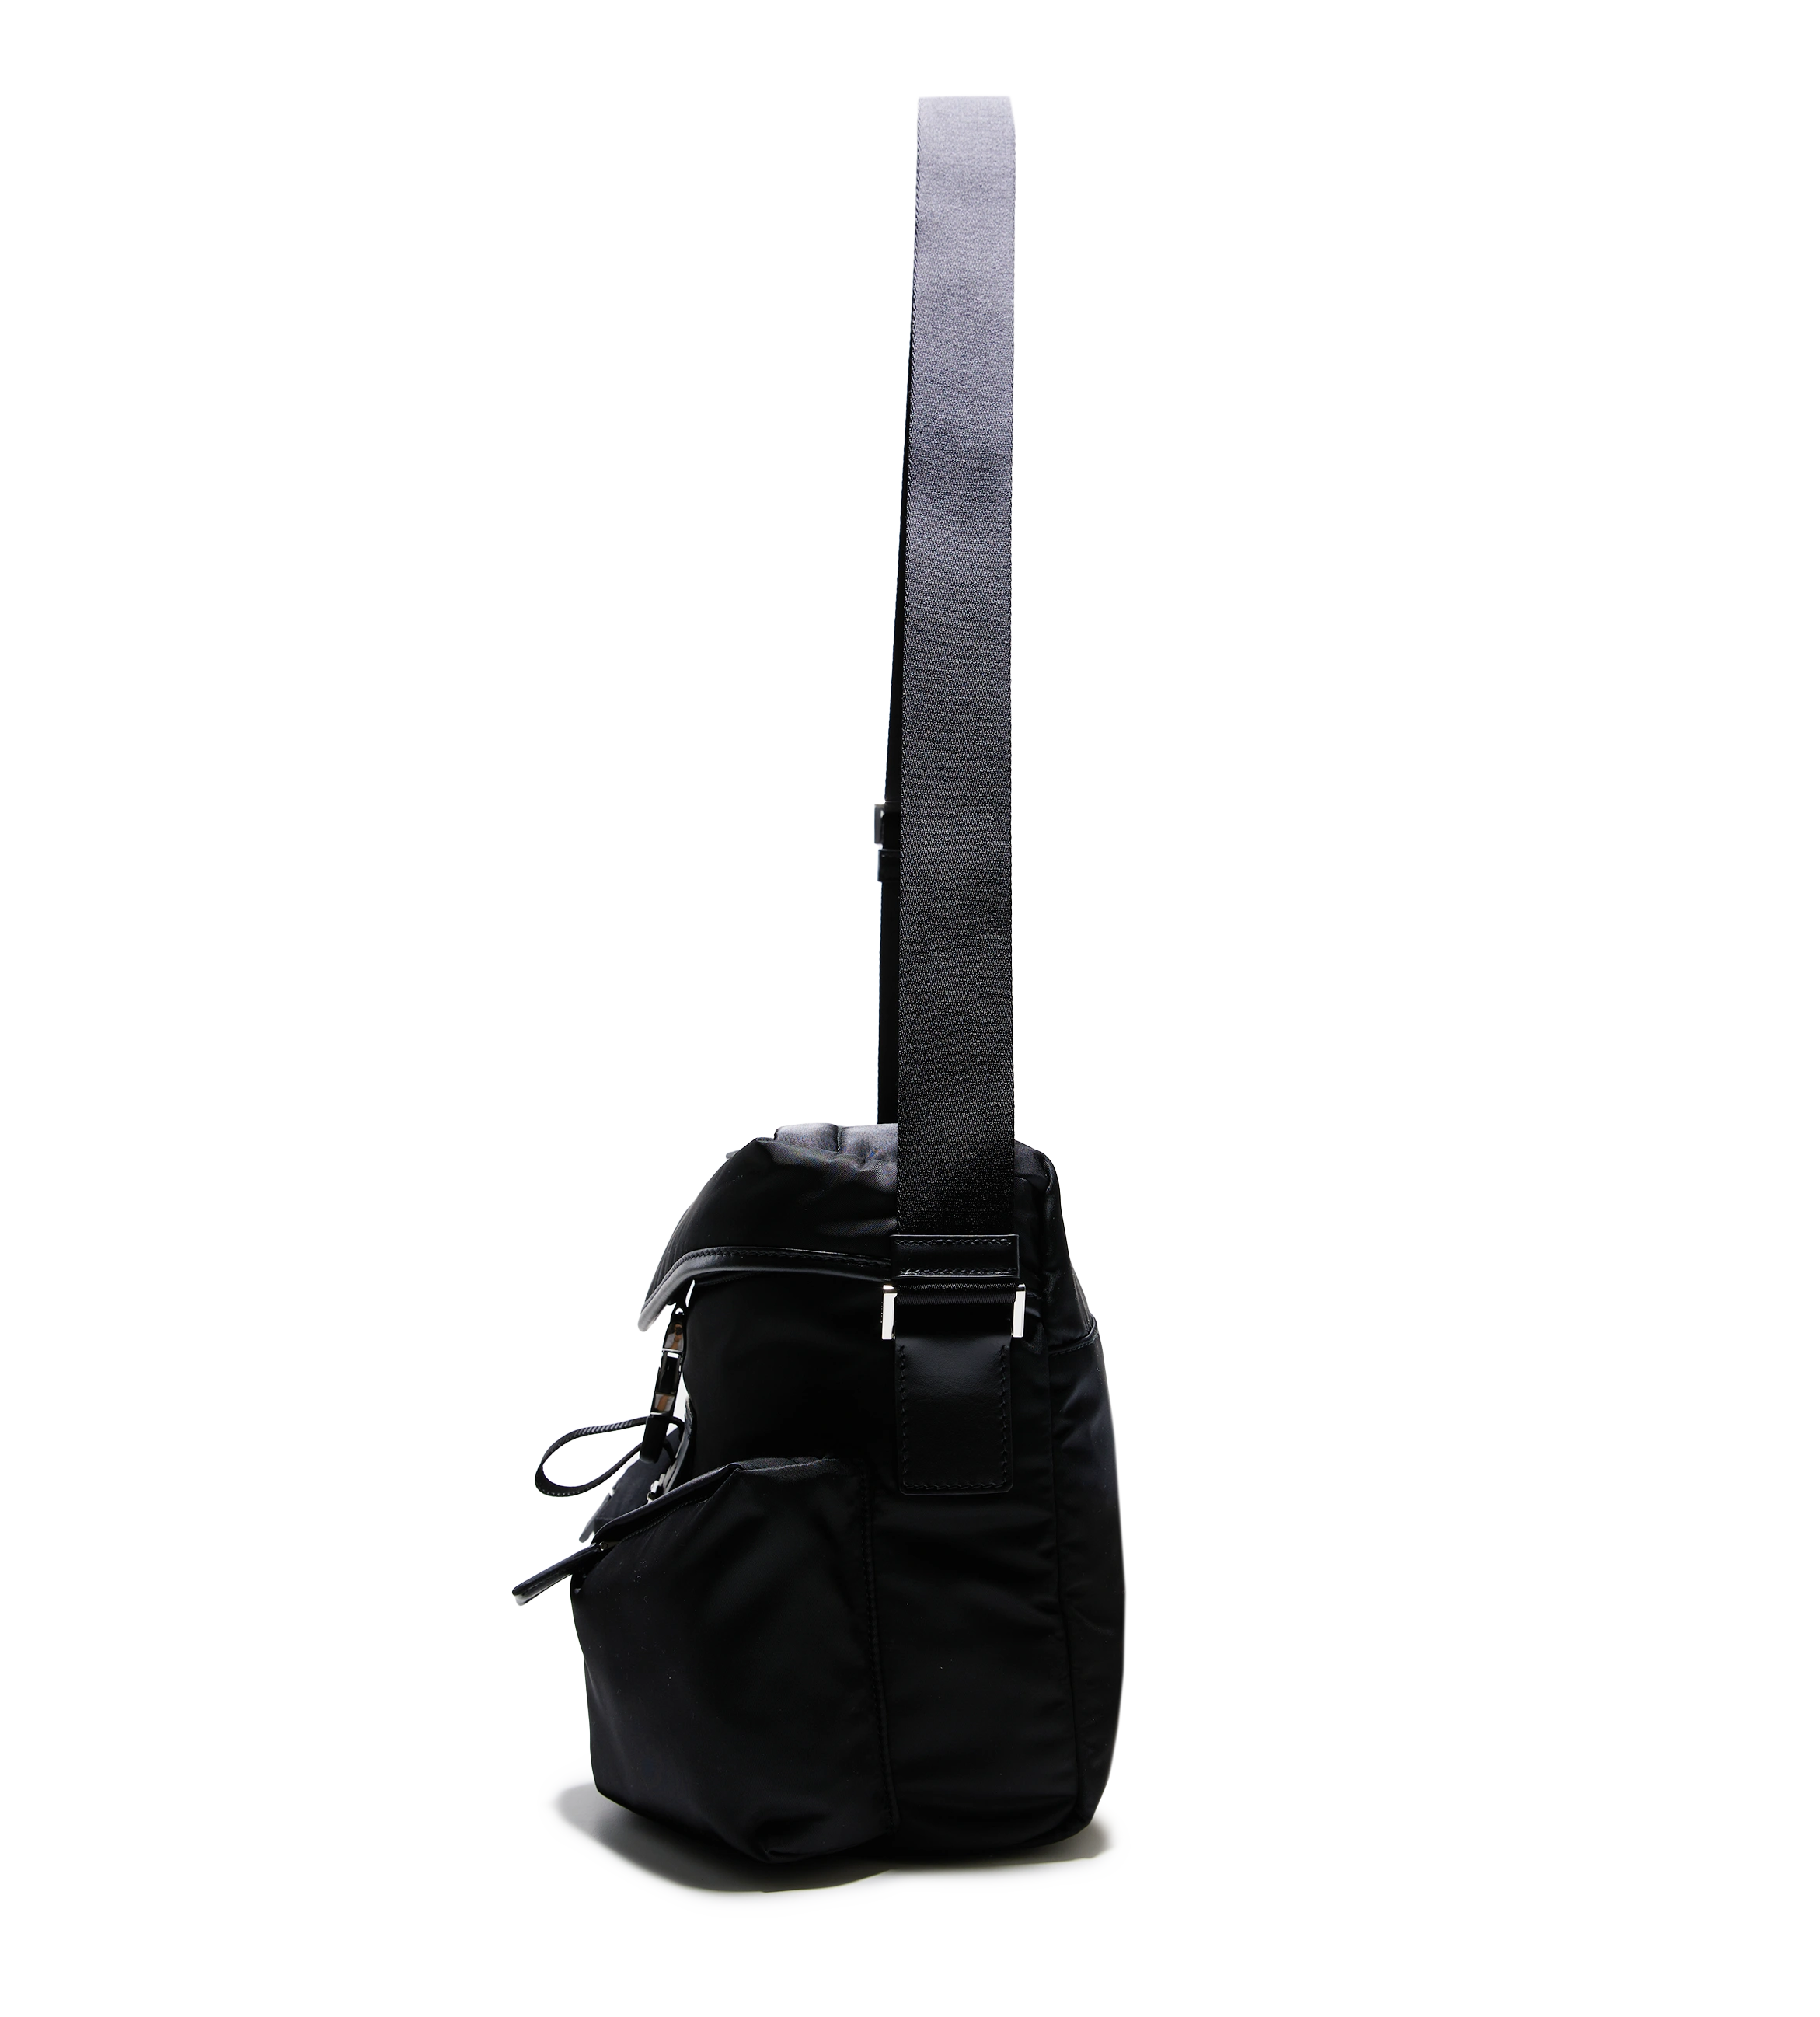 Re-Nylon and Leather Shoulder Bag Black